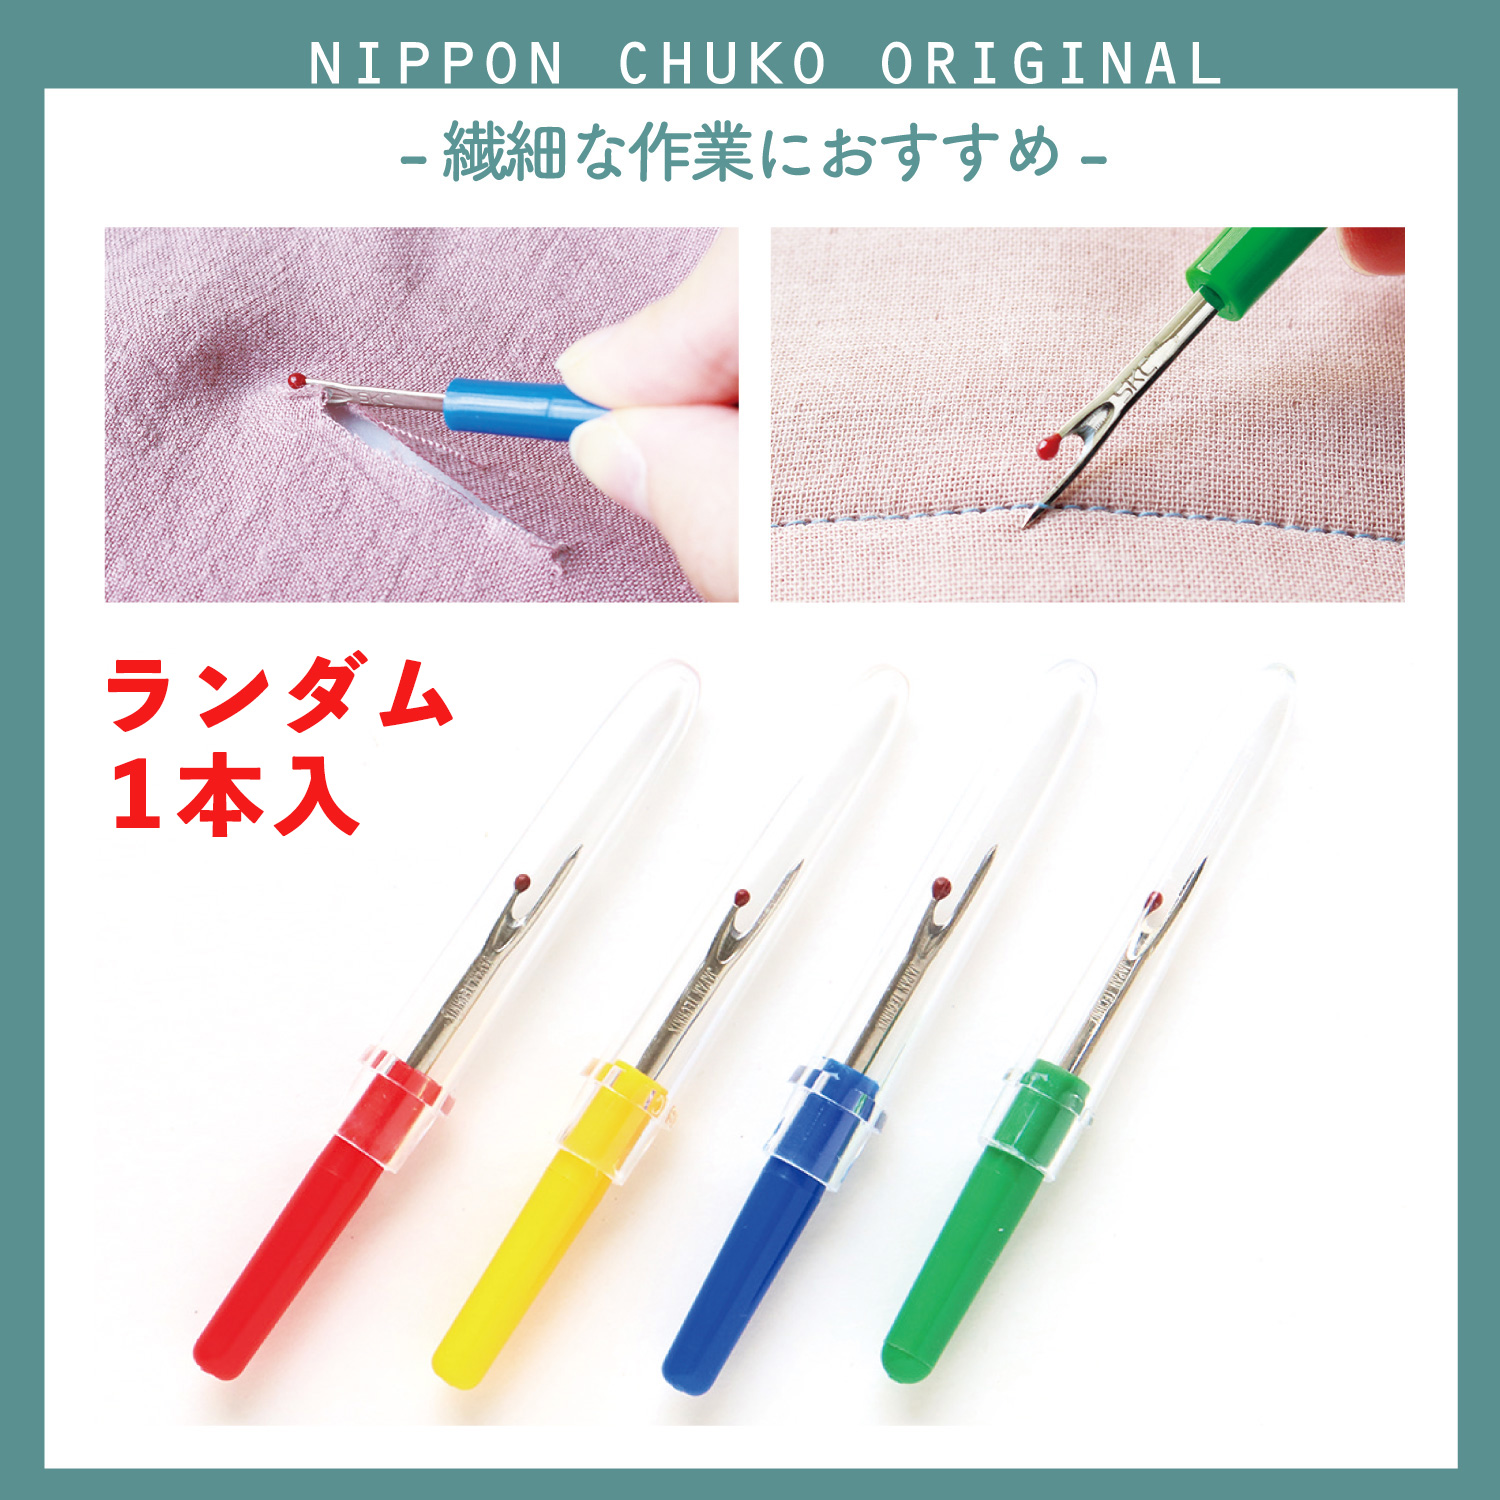 NI-02429 Mini Ripper, Color Random  (pcs)